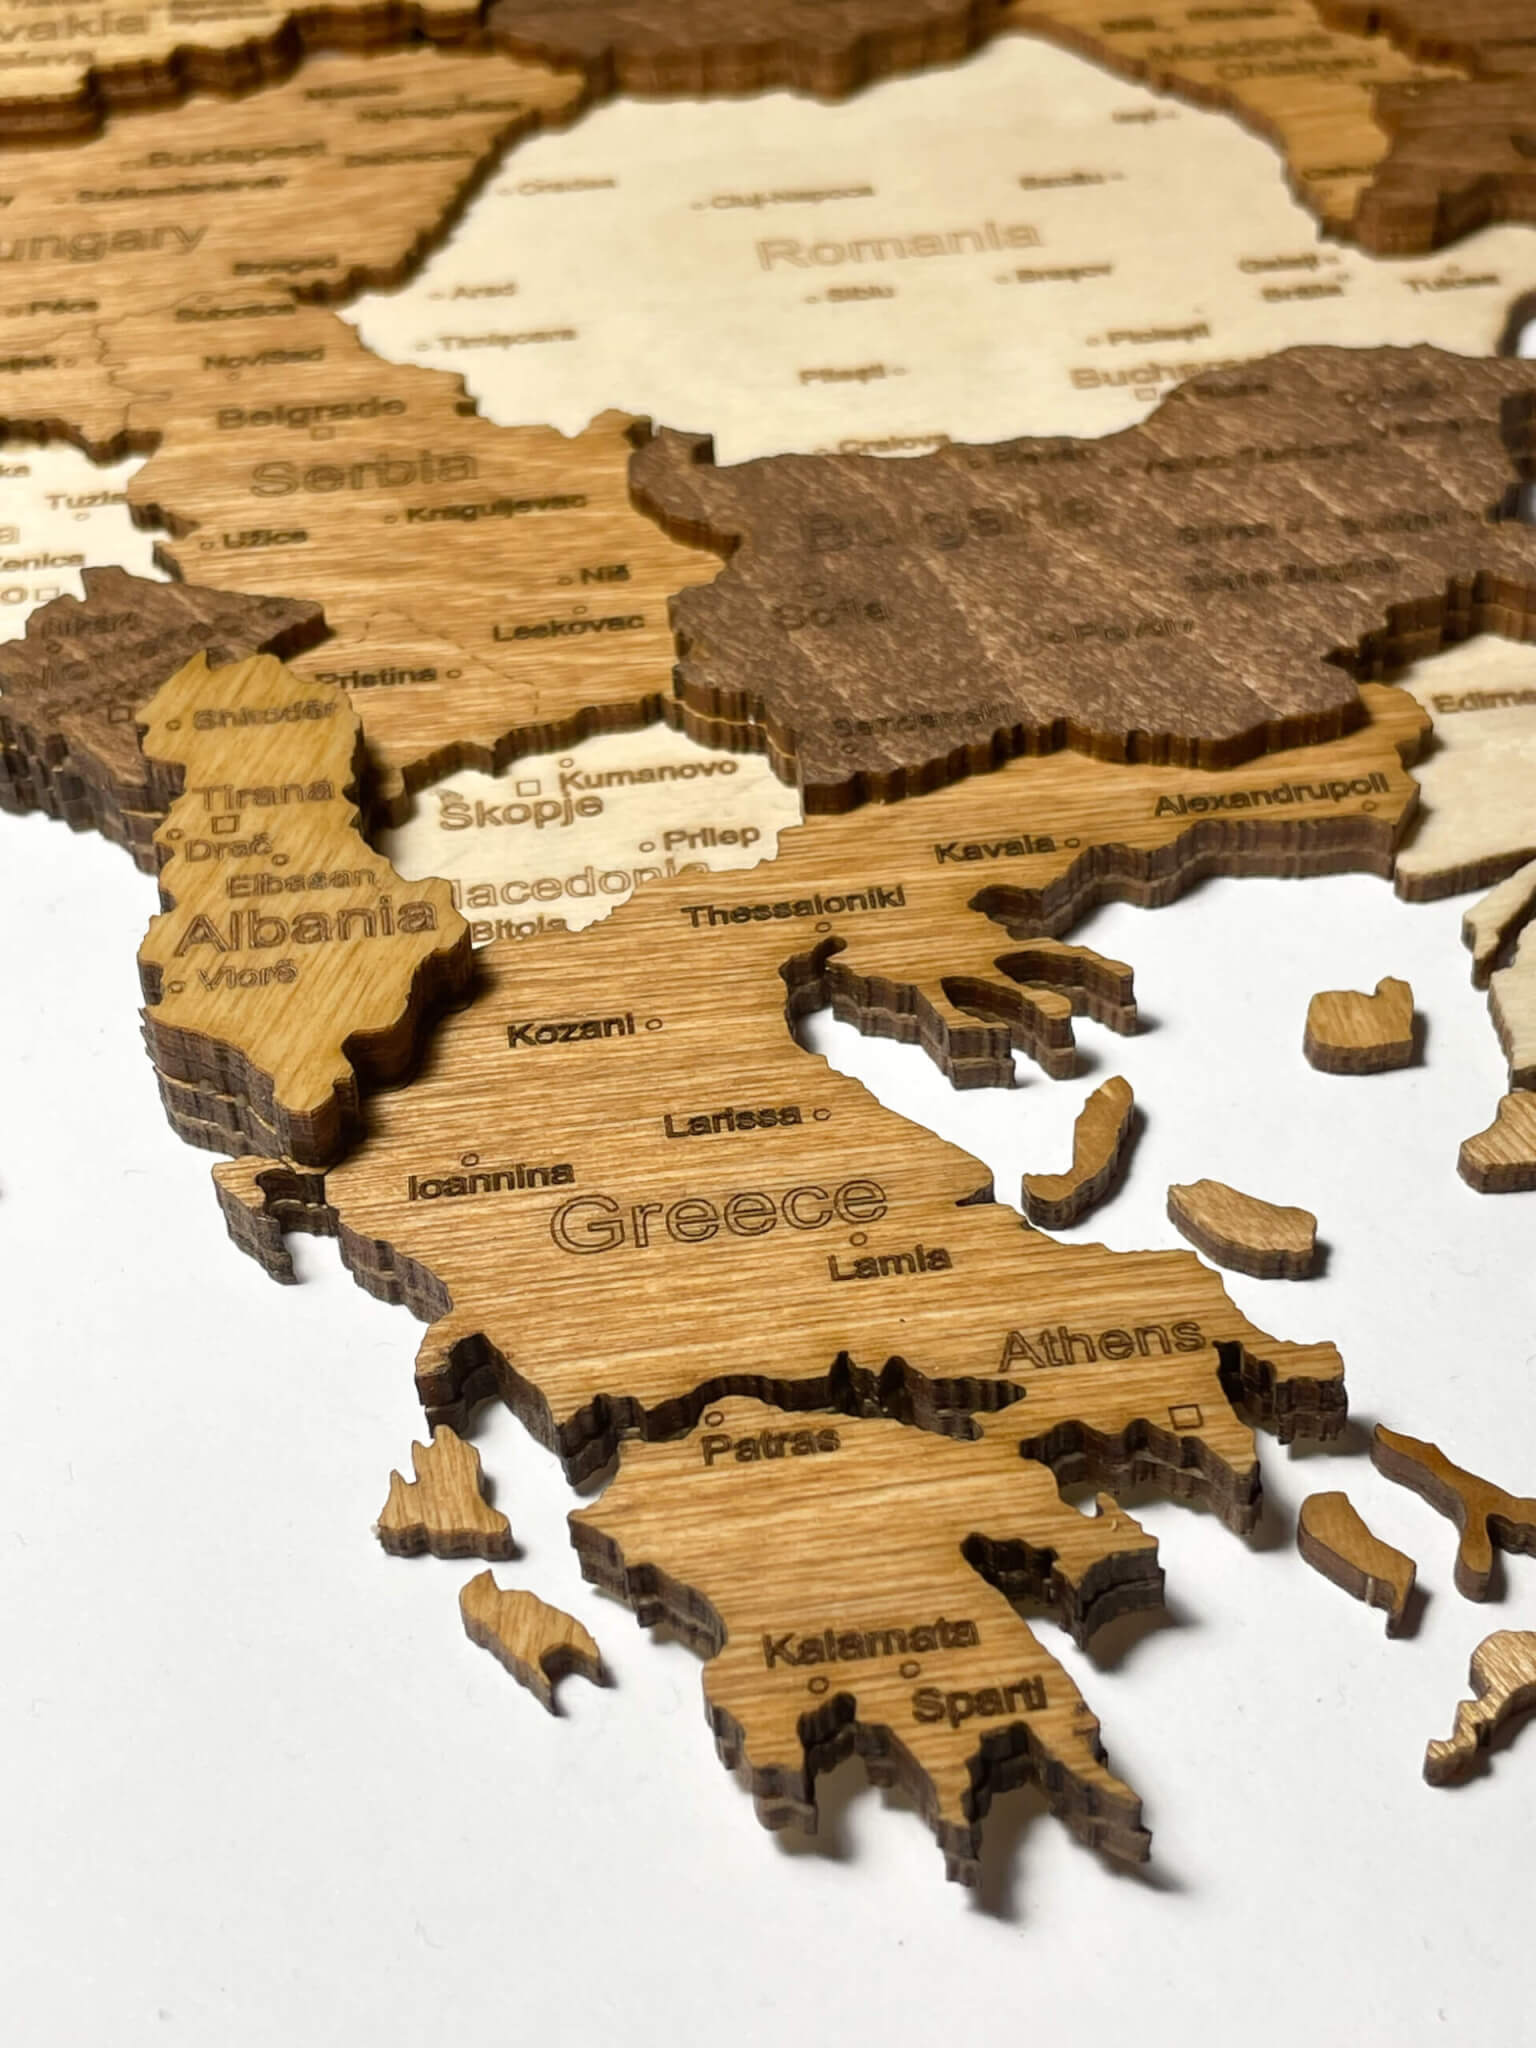 Grécko - drevená mapa Európy